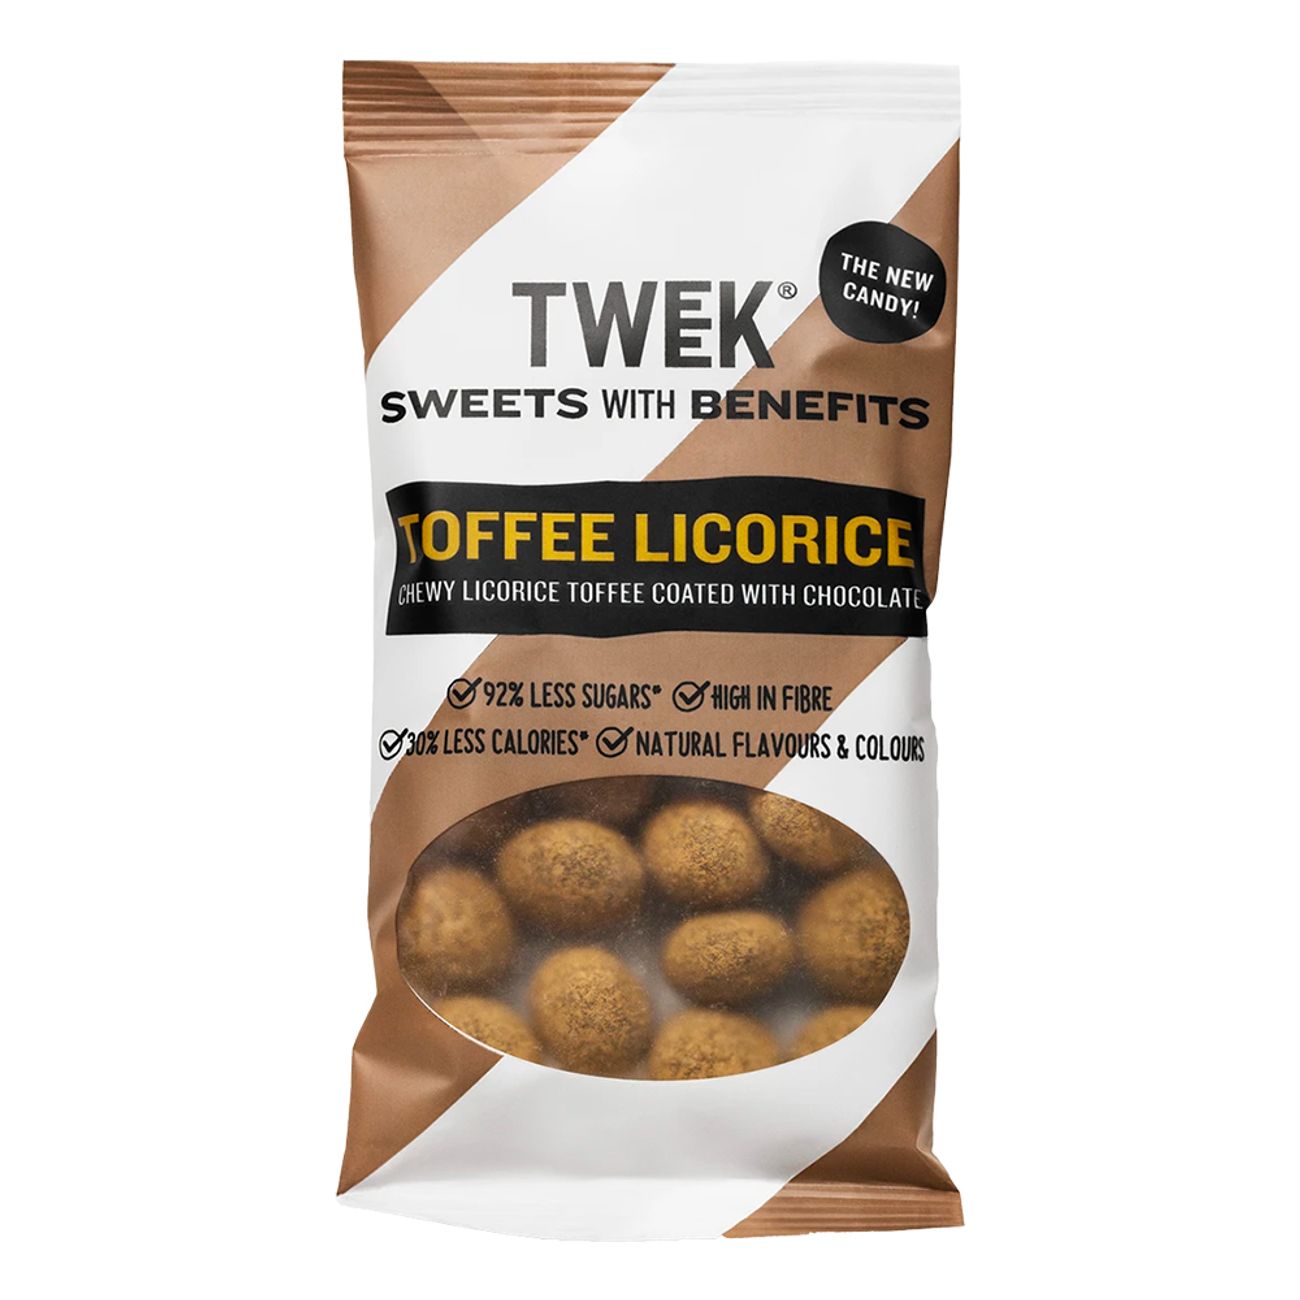 tweek-toffee-licorice-73246-1